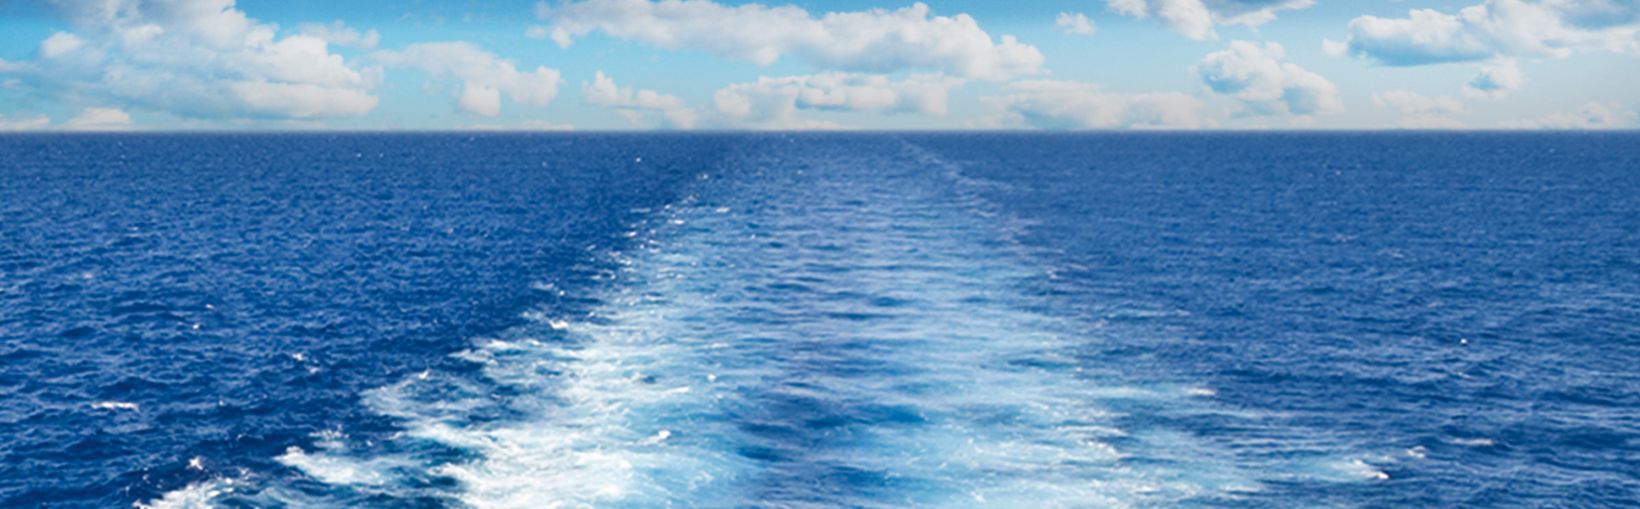 Zicht op het schip, genomen vanaf het buitendek aan boord van een ferry van de Stena Line op een zonnige, bewolkte dag